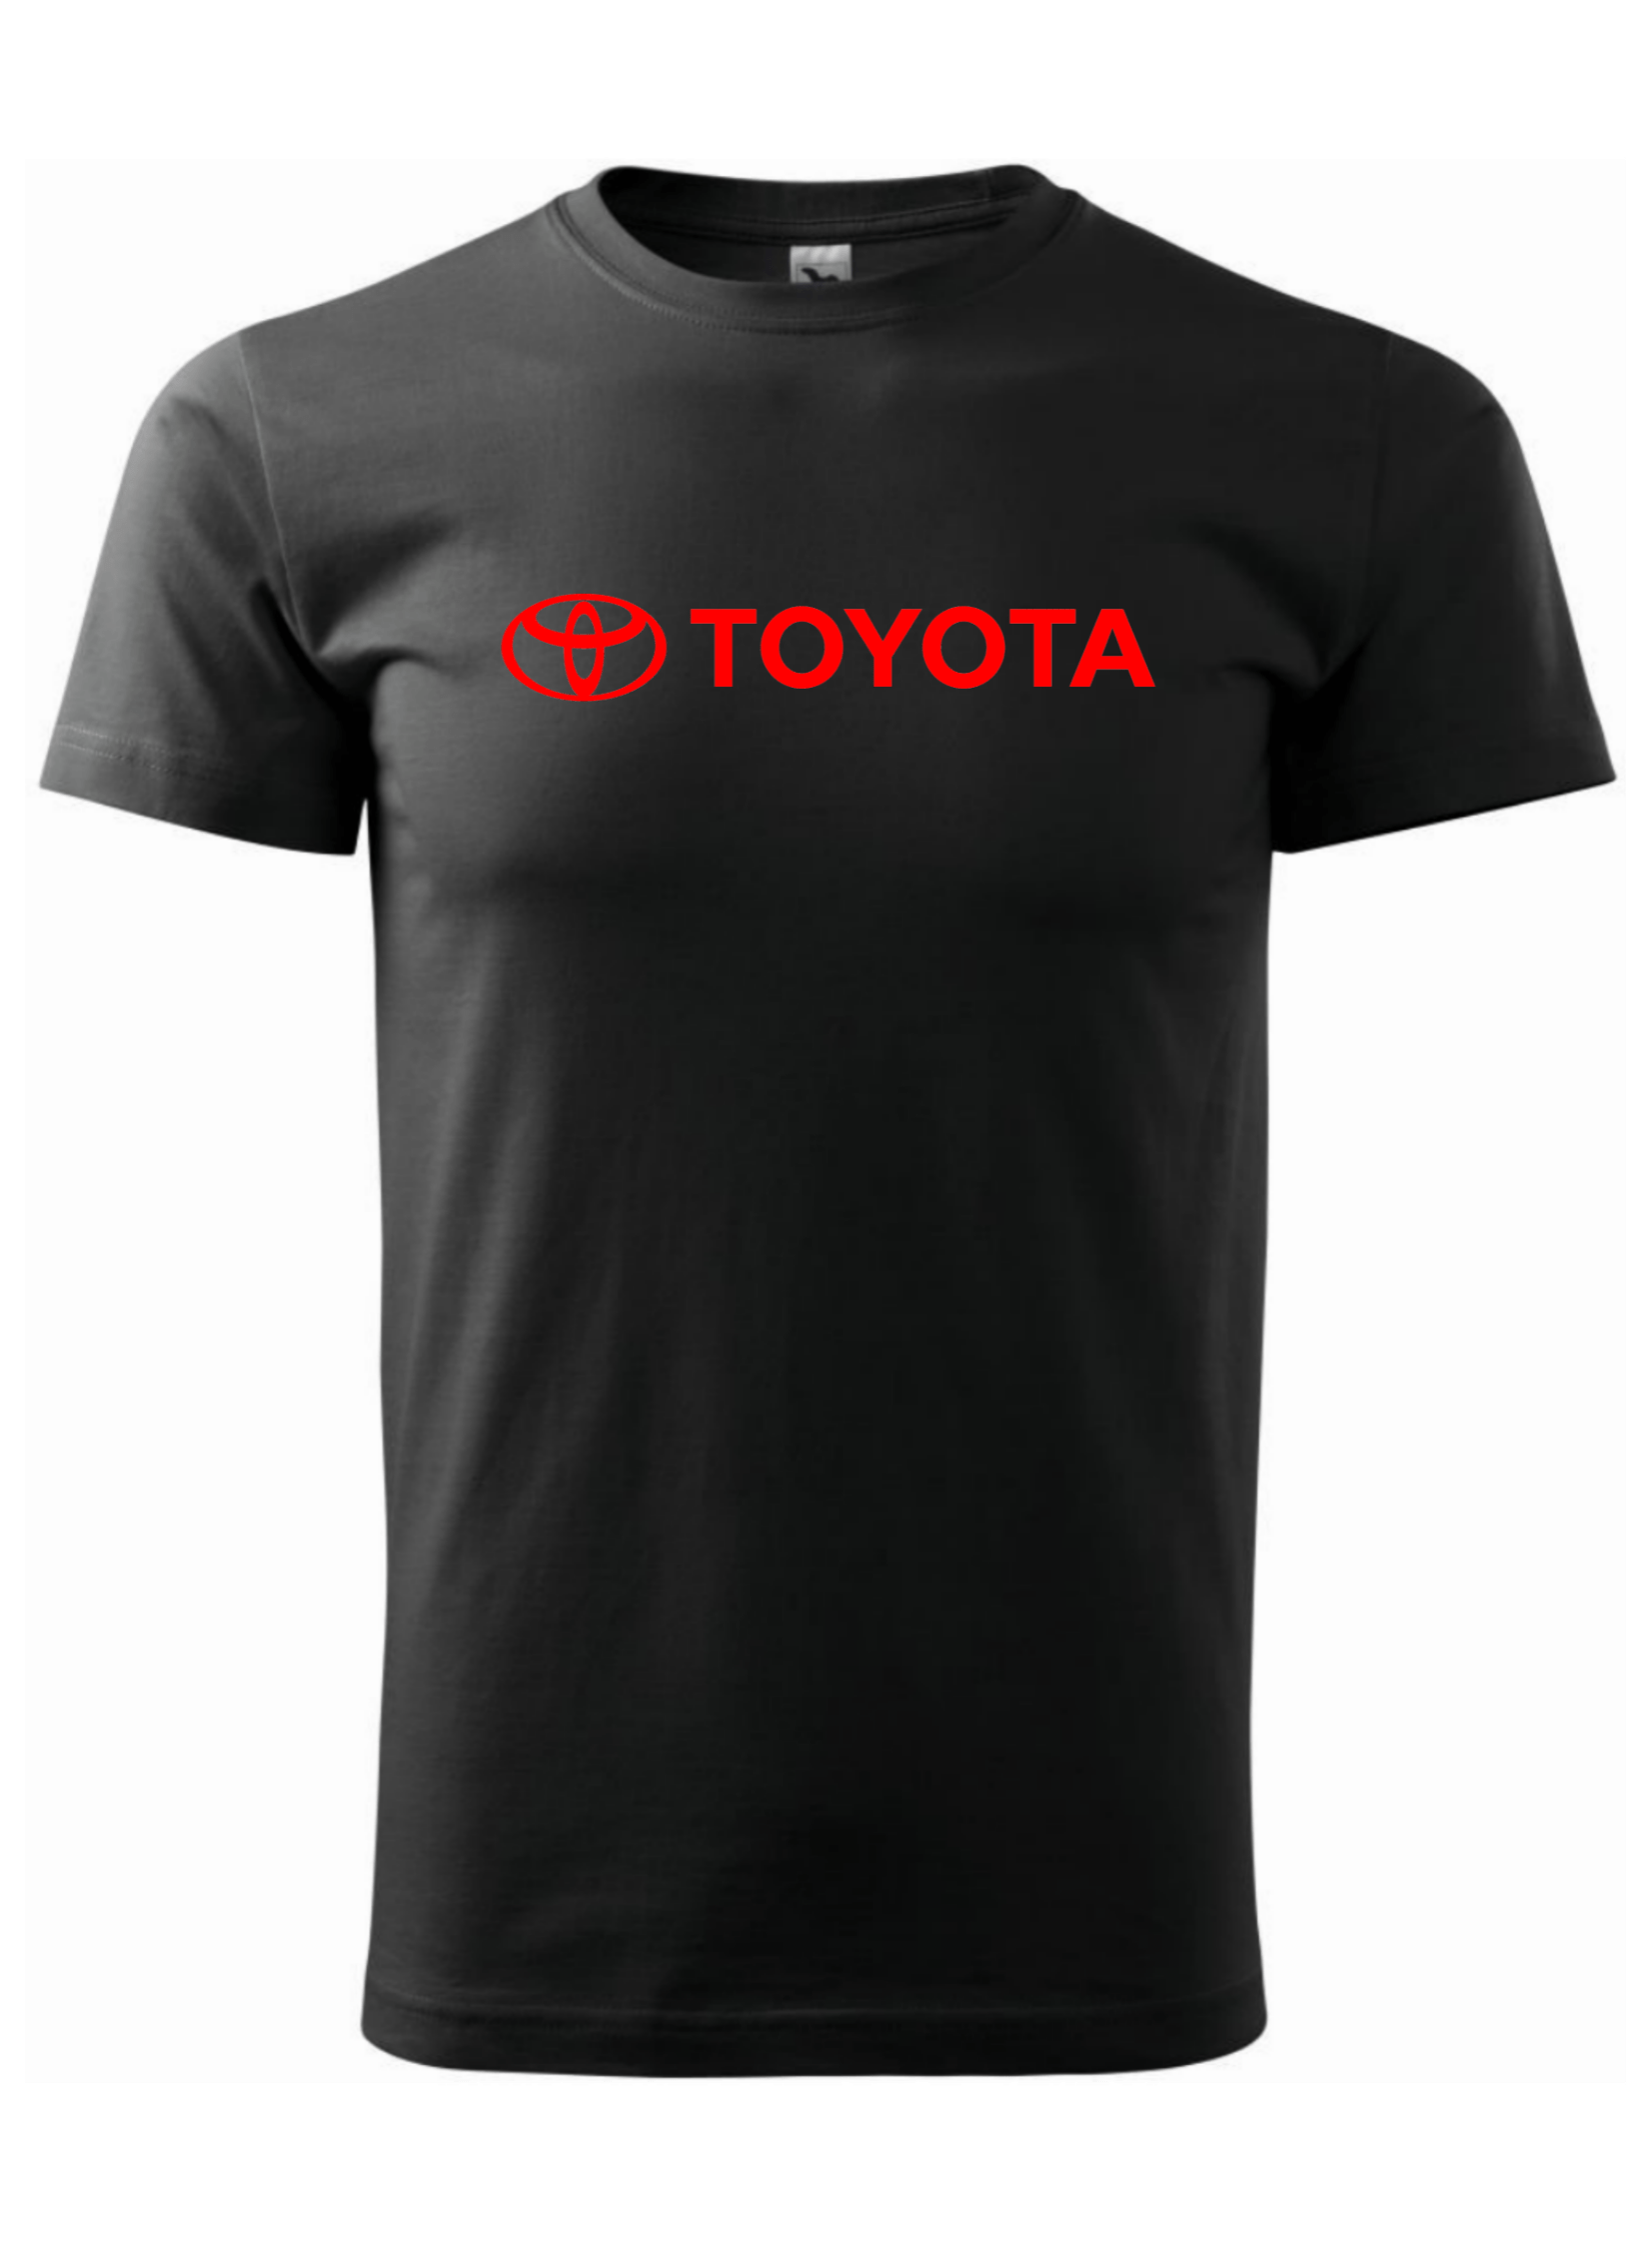 Pánské tričko s potiskem značky Toyota